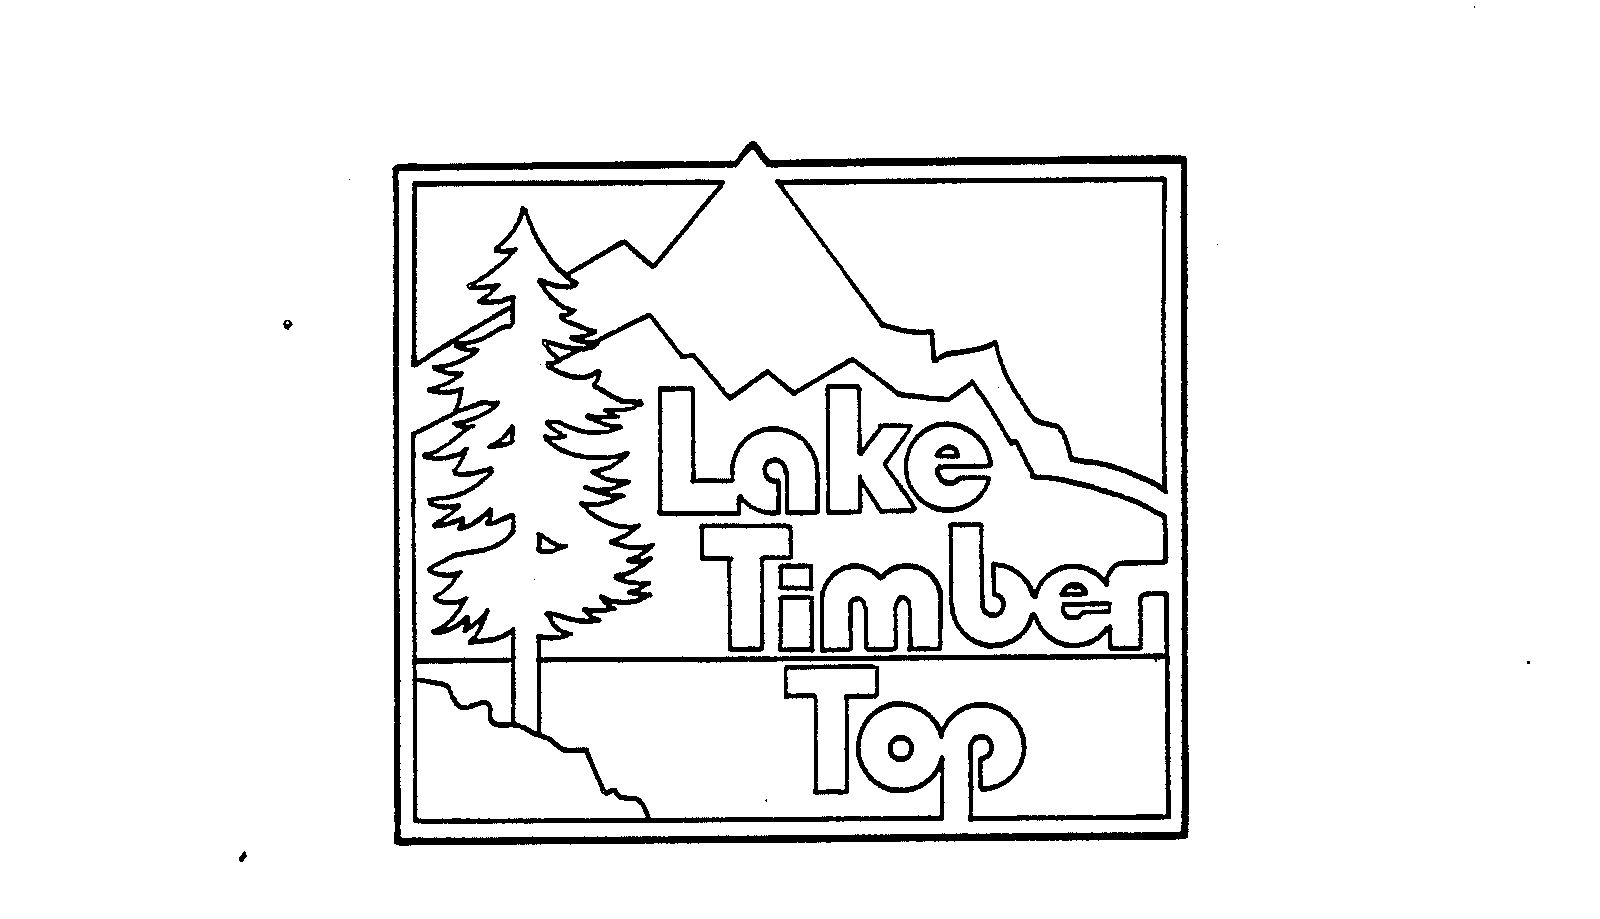 Trademark Logo LAKE TIMBER TOP